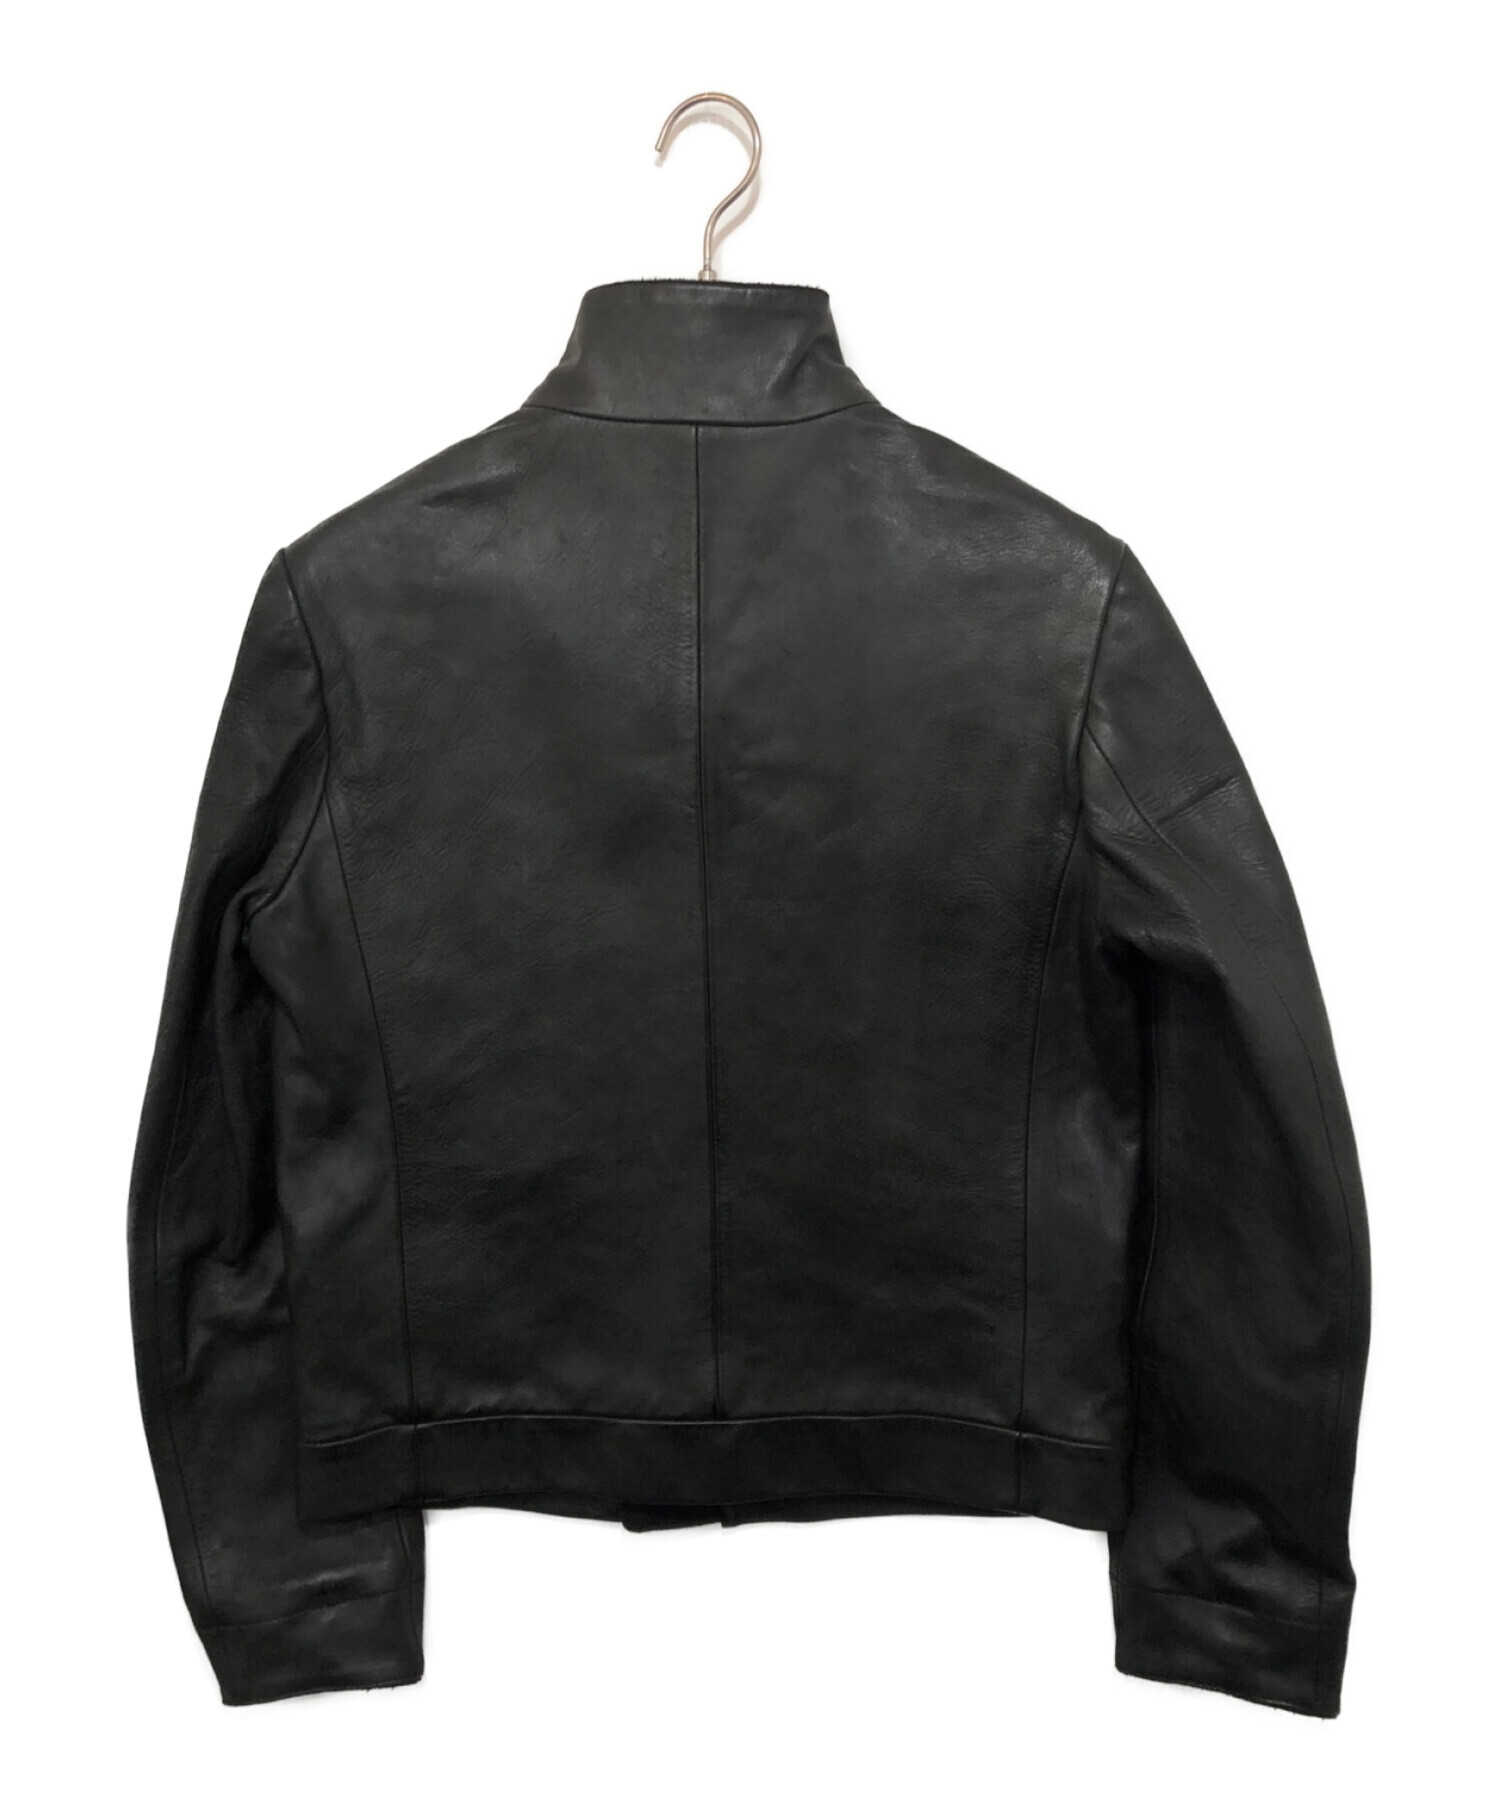 STONE ISLAND (ストーンアイランド) レザージャケット ブラック サイズ:M